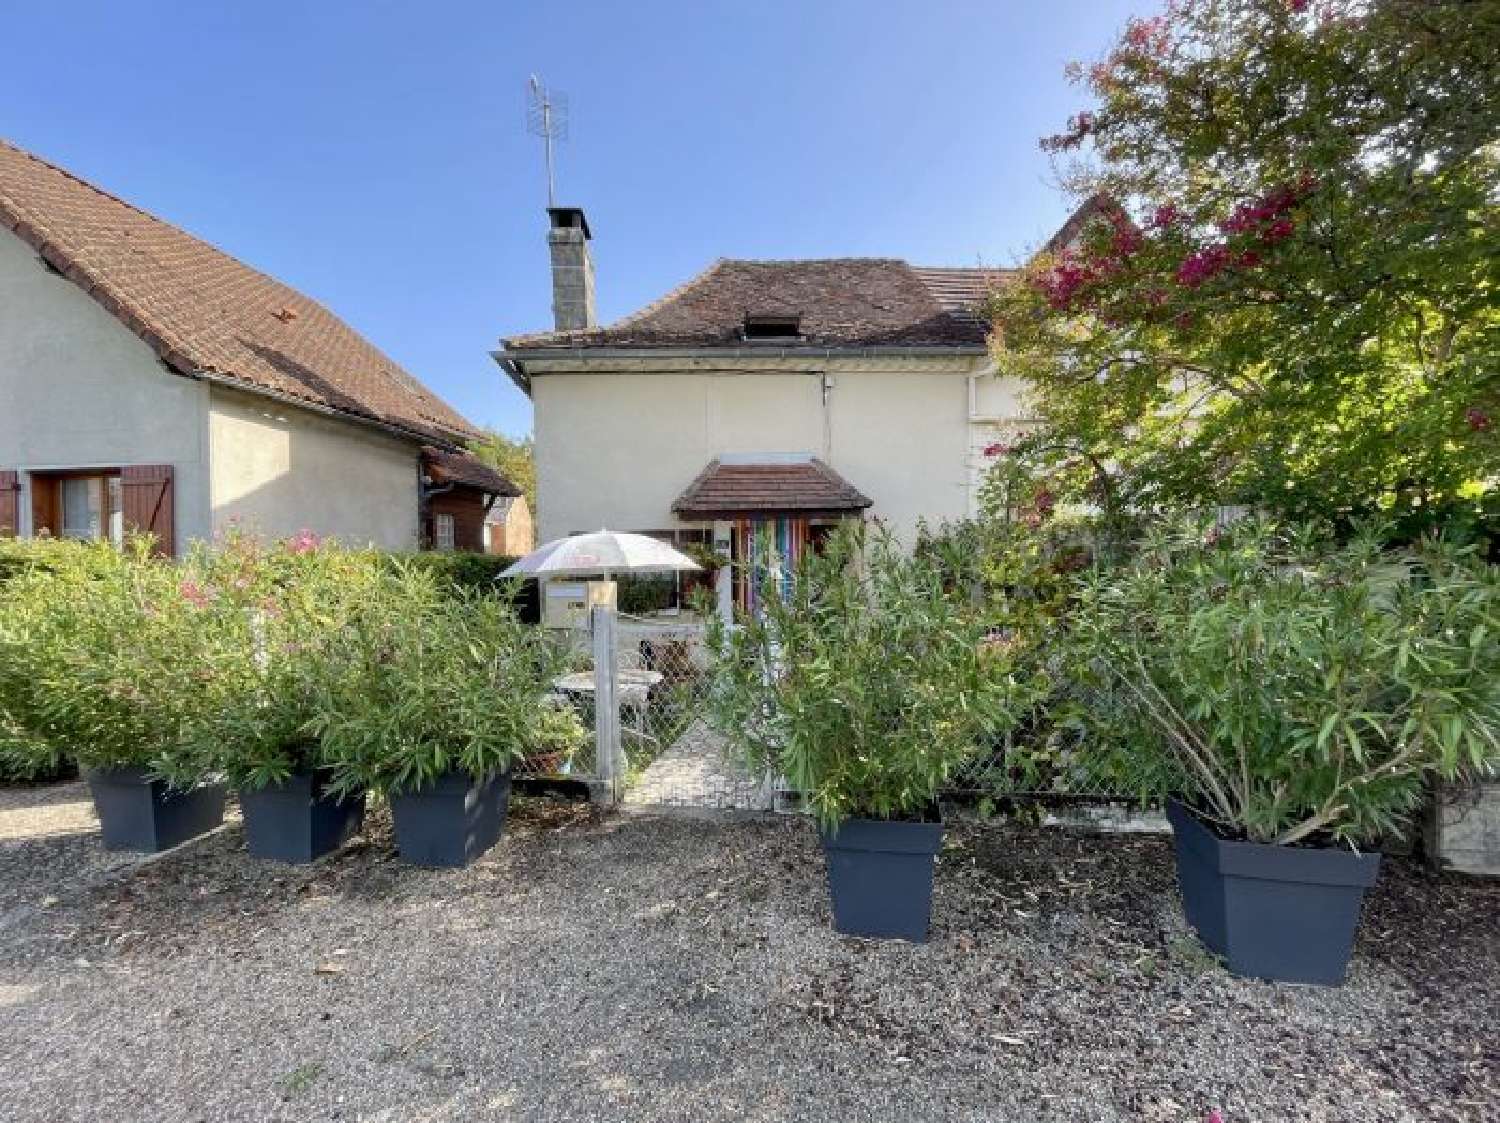  for sale house Corgnac-sur-l'Isle Dordogne 3